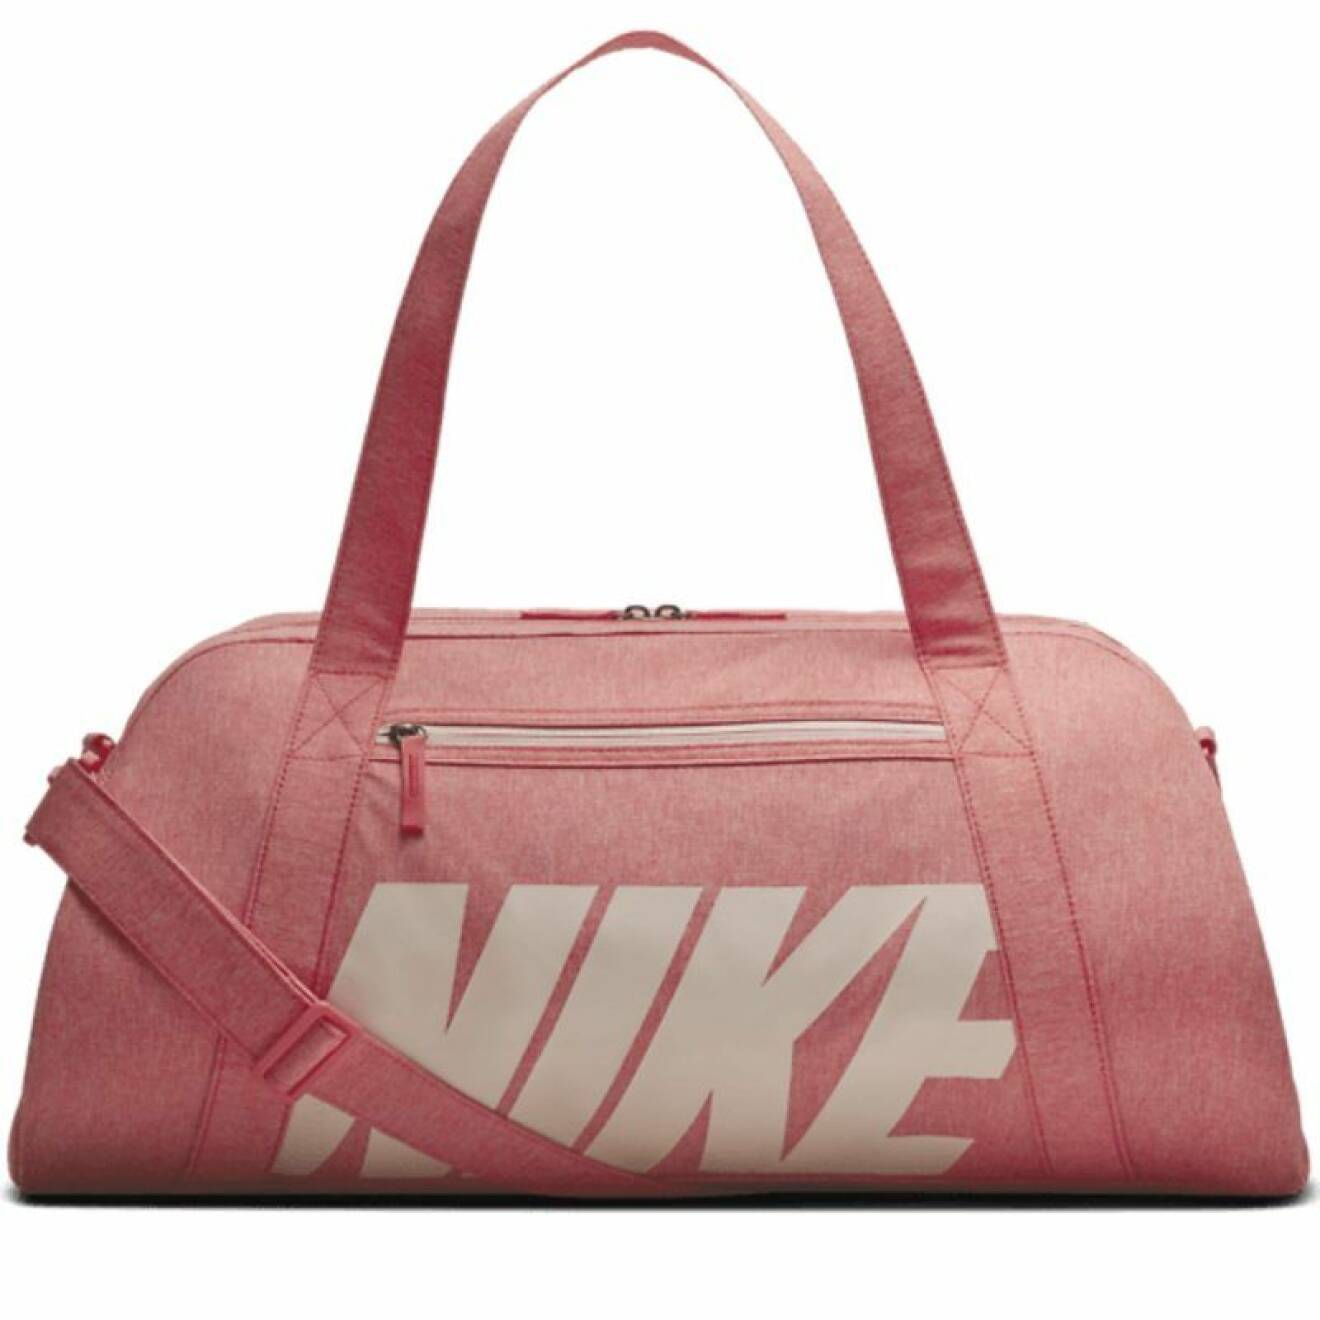 Rosa träningsväska från Nike